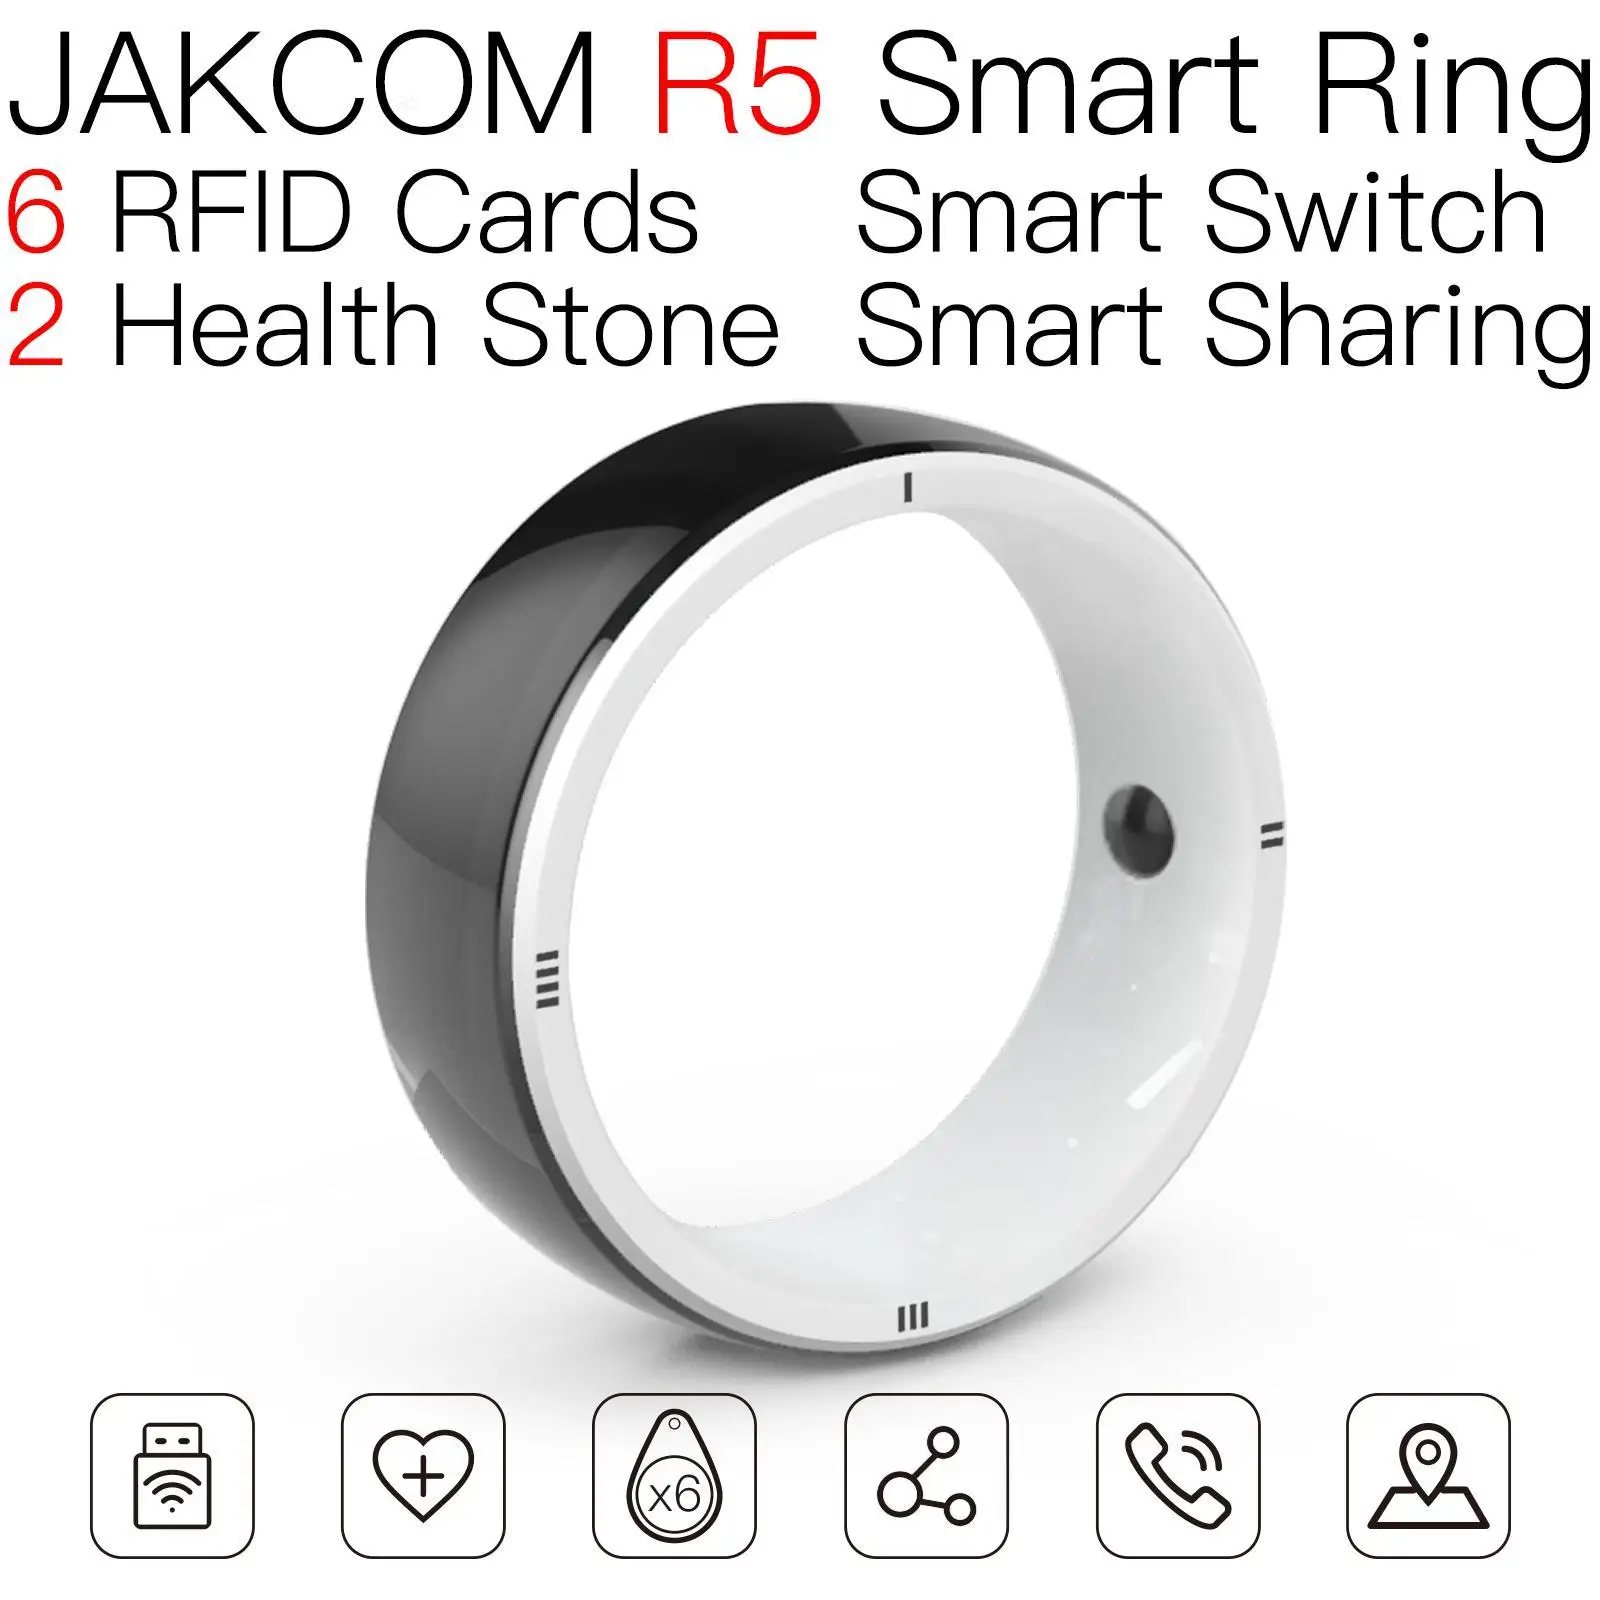 

Умное кольцо JAKCOM R5, лучше, чем rfid-карта, двойная бирка для собаки, стандартные бумажные карты, Пользовательский логотип, кодовая наклейка, принты, этикетки, переворачивание нуля